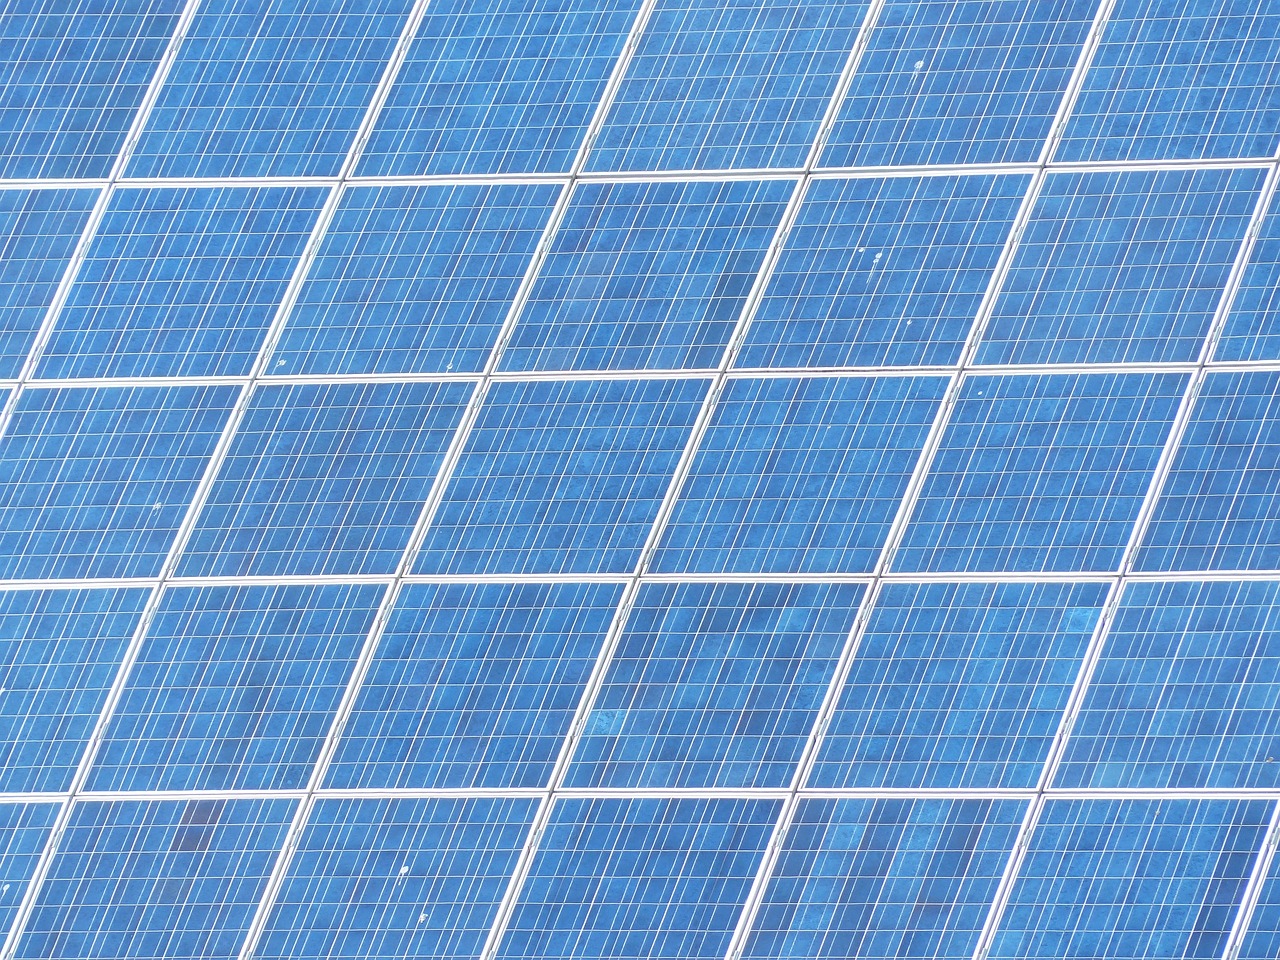 太阳能电池材料有哪几种_太阳能电池常用材料是什么-第3张图片-创互客网